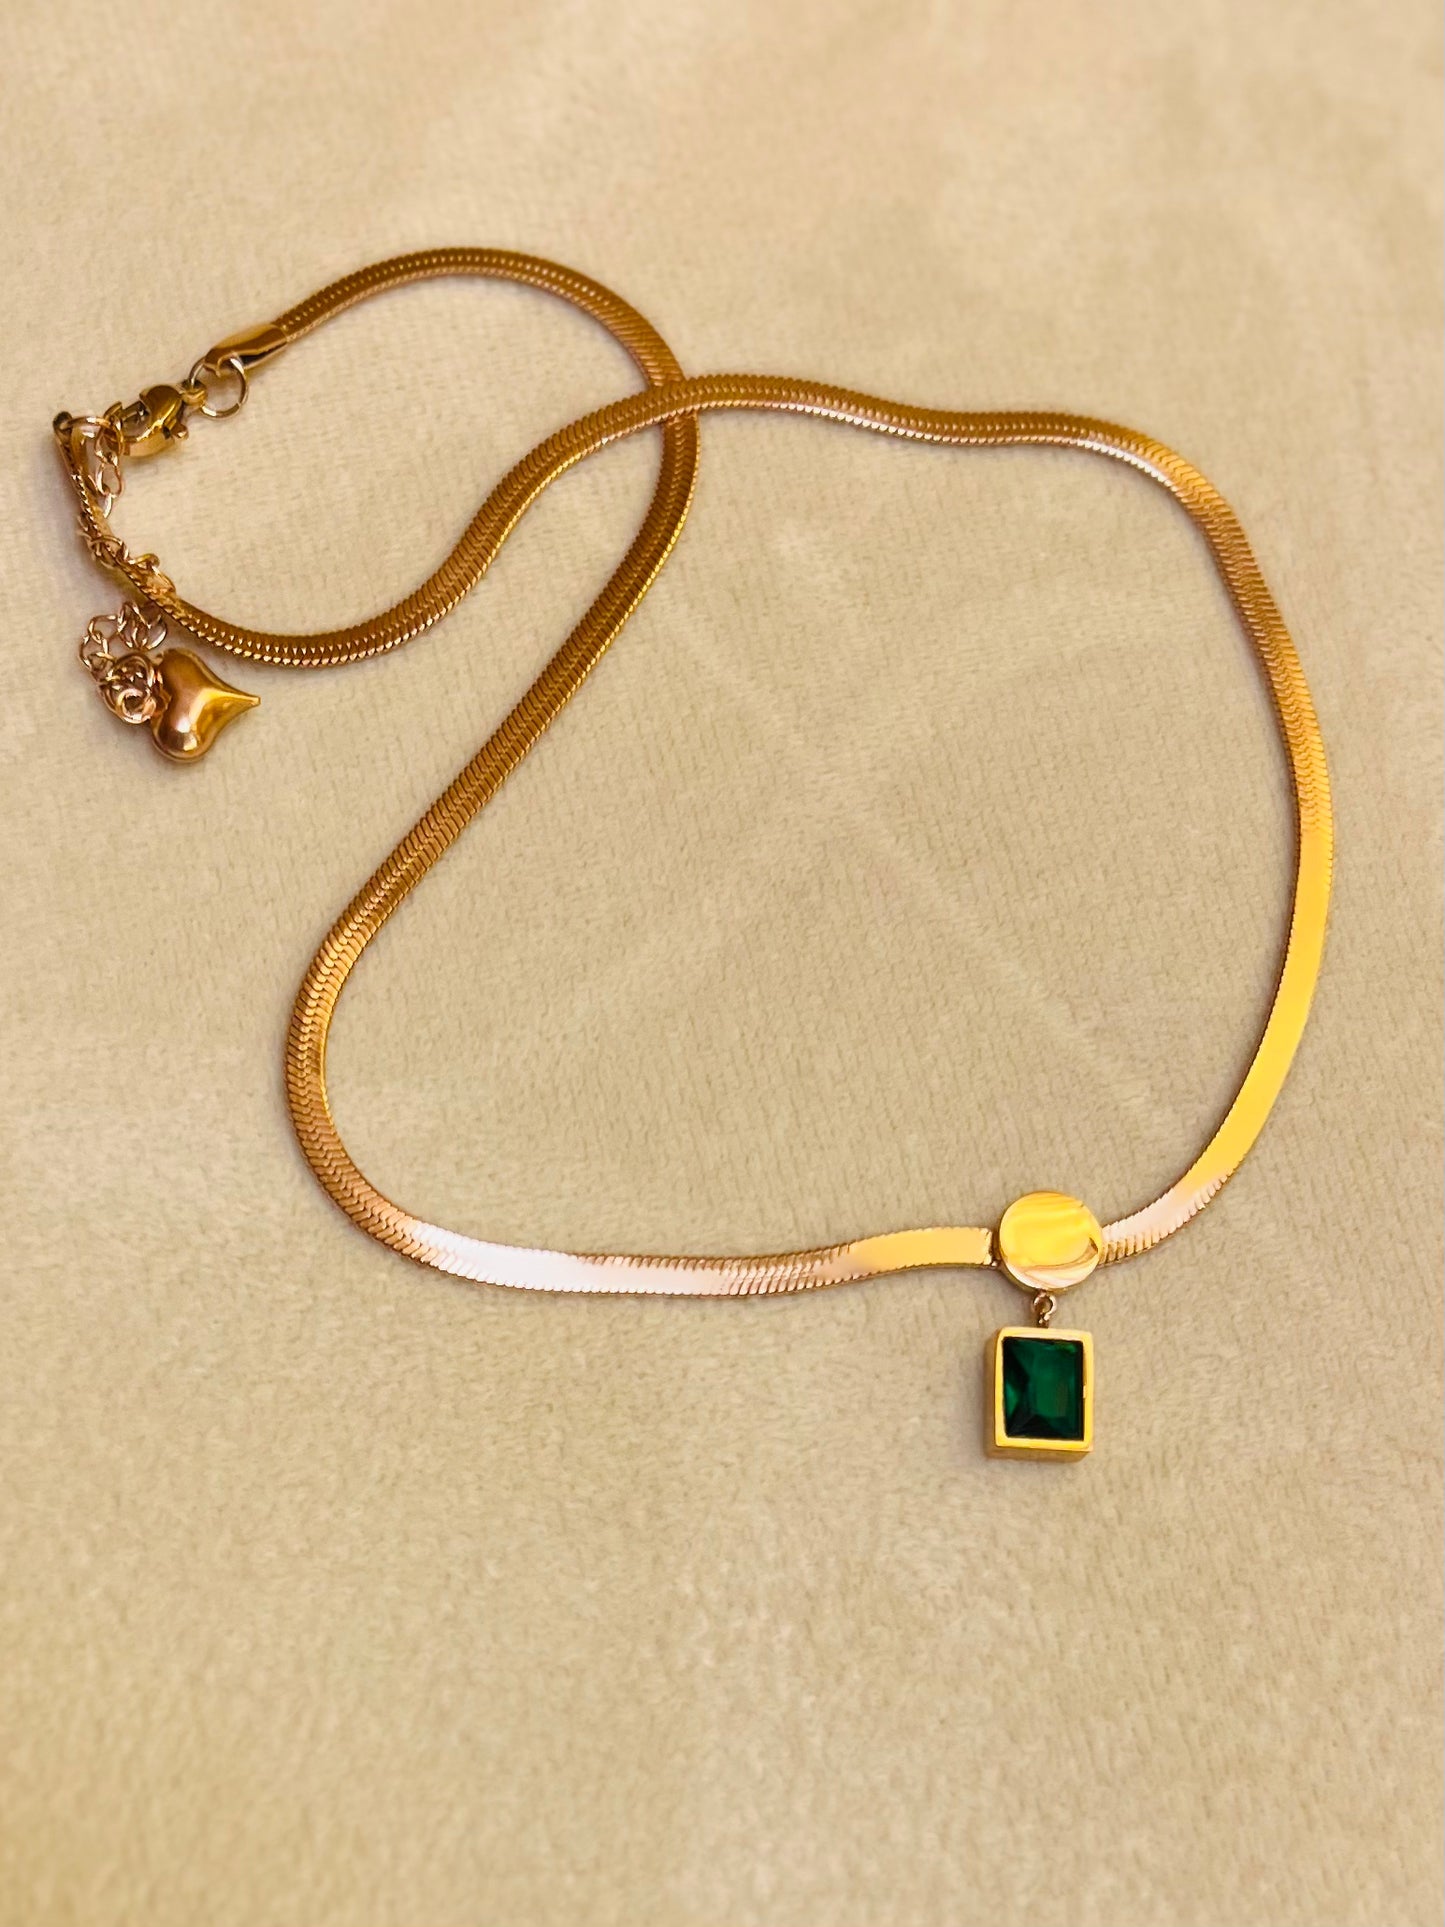 Emerald stone pendant chain